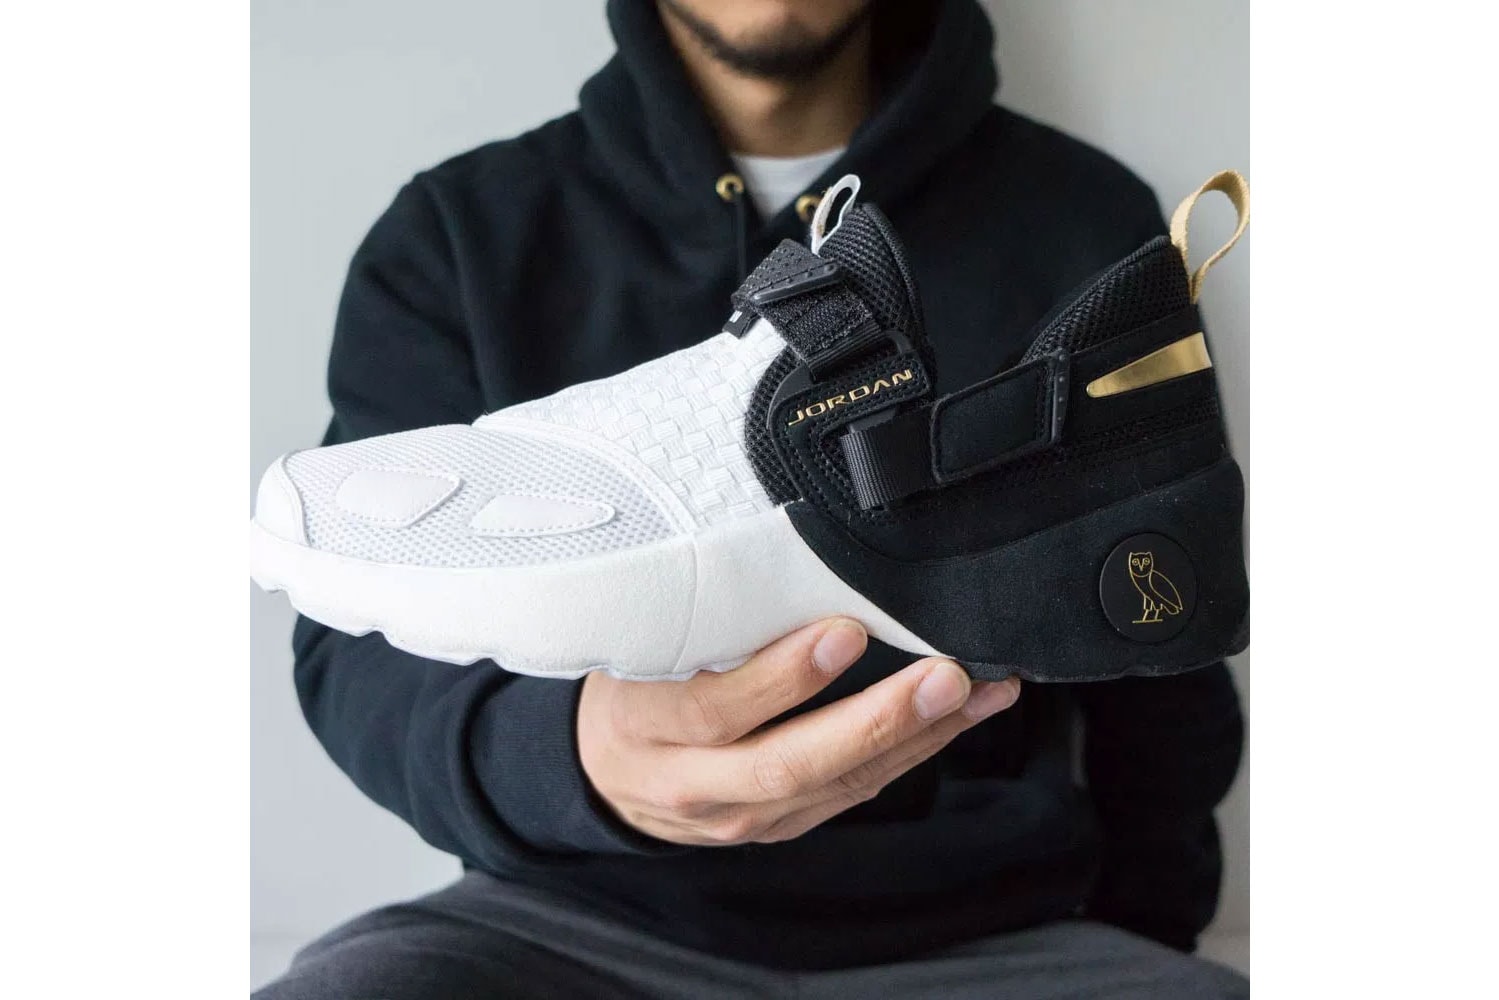 OVO Jordan Trunner LX October's Very Own Drake Nike